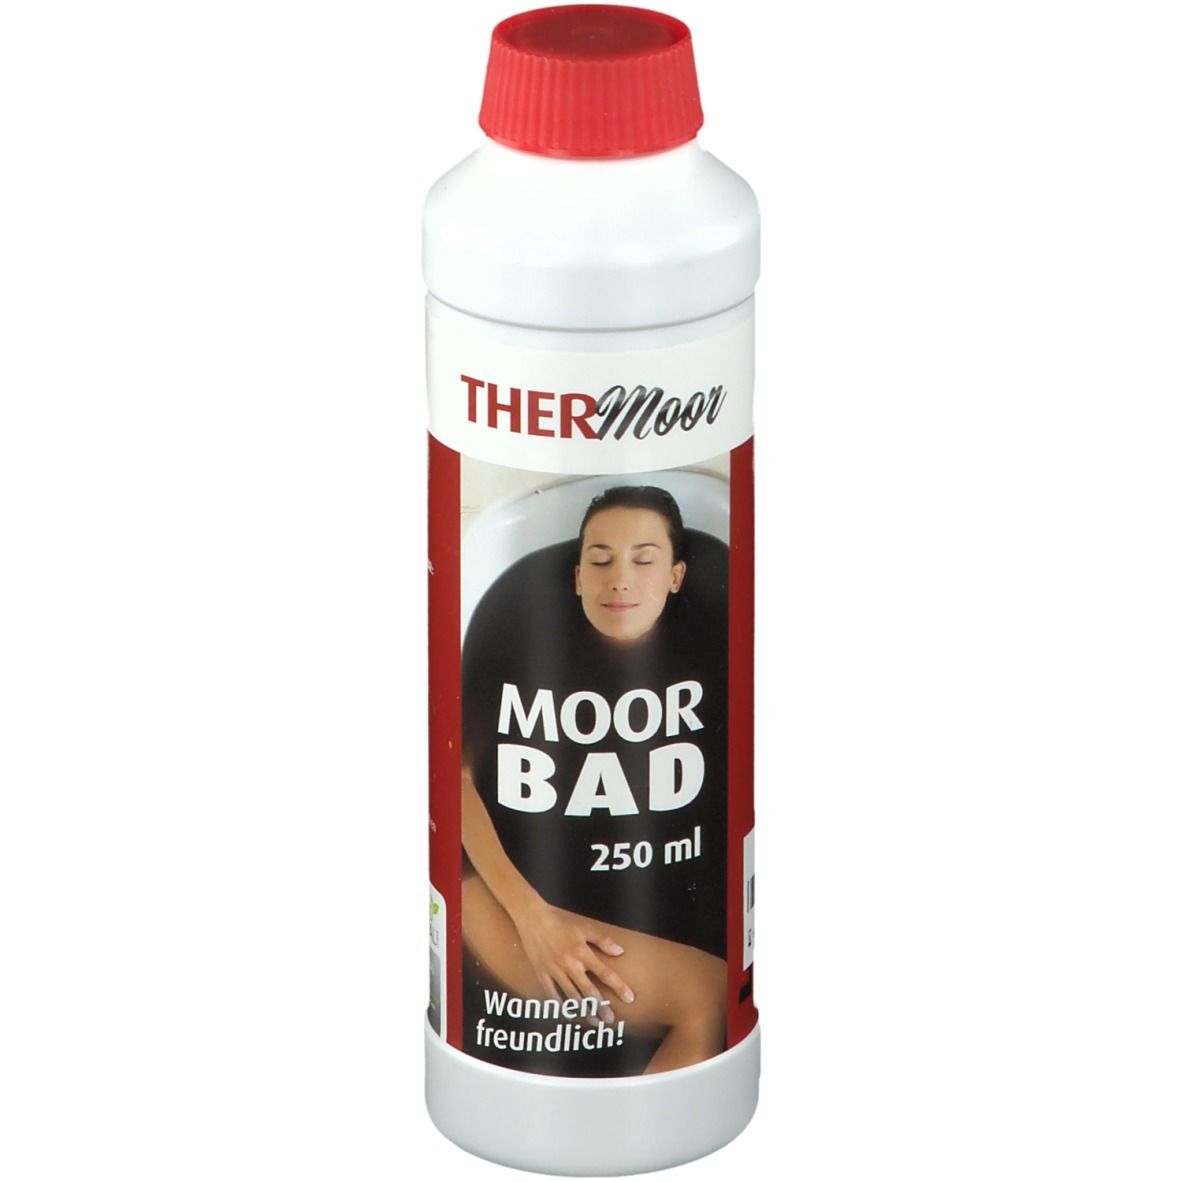 THERMoor Moorbad